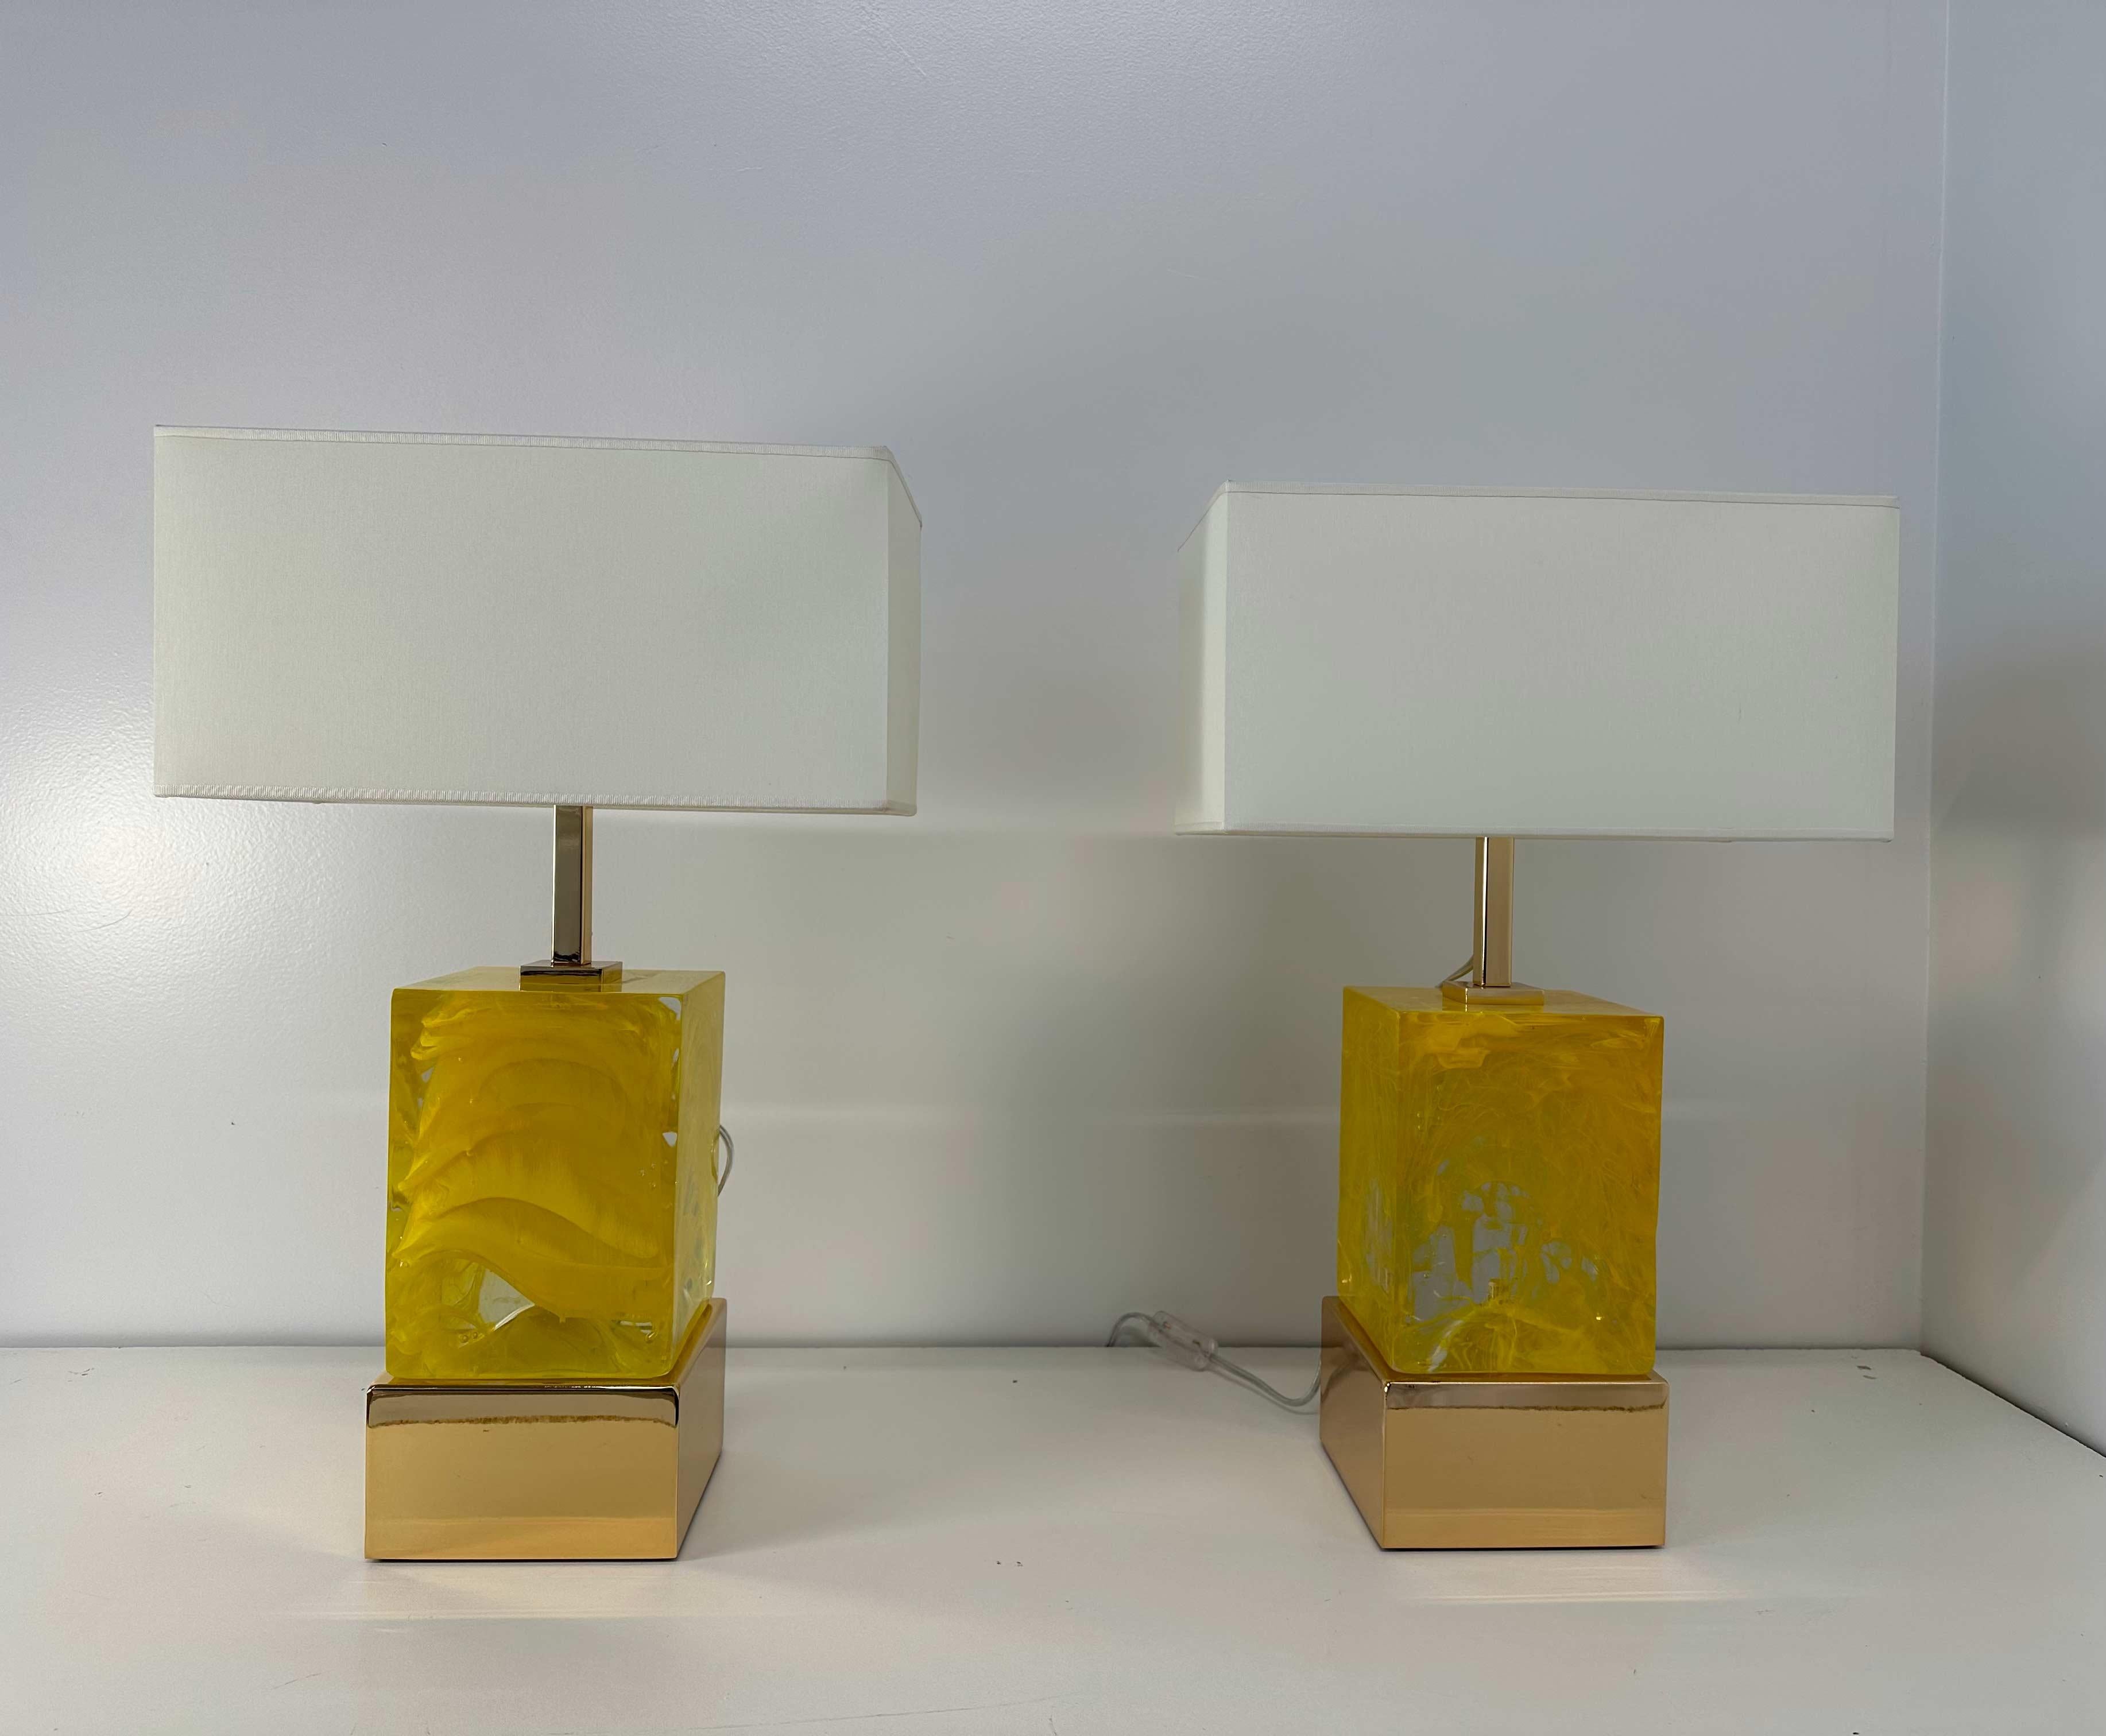 Dieses Lampenpaar im Art-déco-Stil wurde in den 2000er Jahren in Murano hergestellt. 
Der Sockel und der obere Teil sind aus goldfarbenem, galvanisiertem Messing, während der zentrale Körper aus einem transparenten und gelben Murano-Glaswürfel